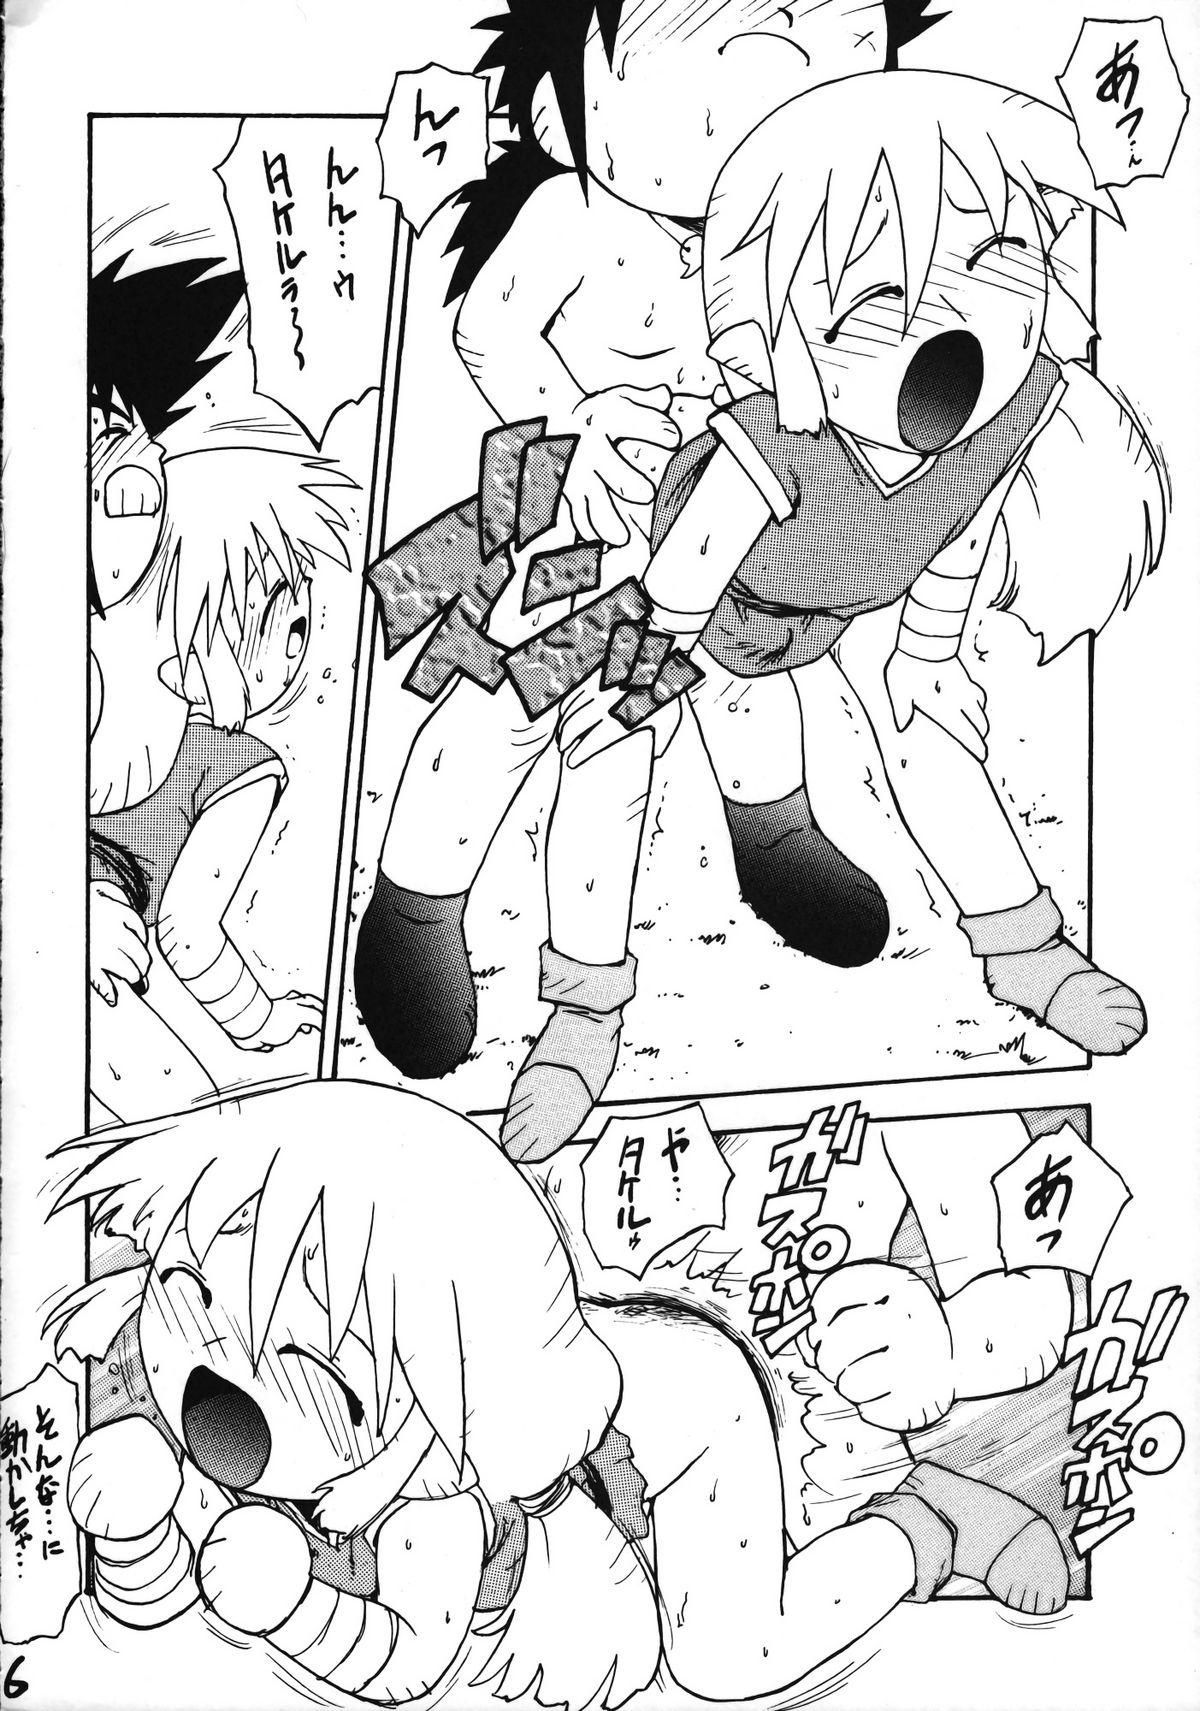 Boyfriend Ikenai! Otokonoko Hon Boy's H Book 2 - Samurai spirits Dragon ball z Yamato takeru Girl Fucked Hard - Page 7